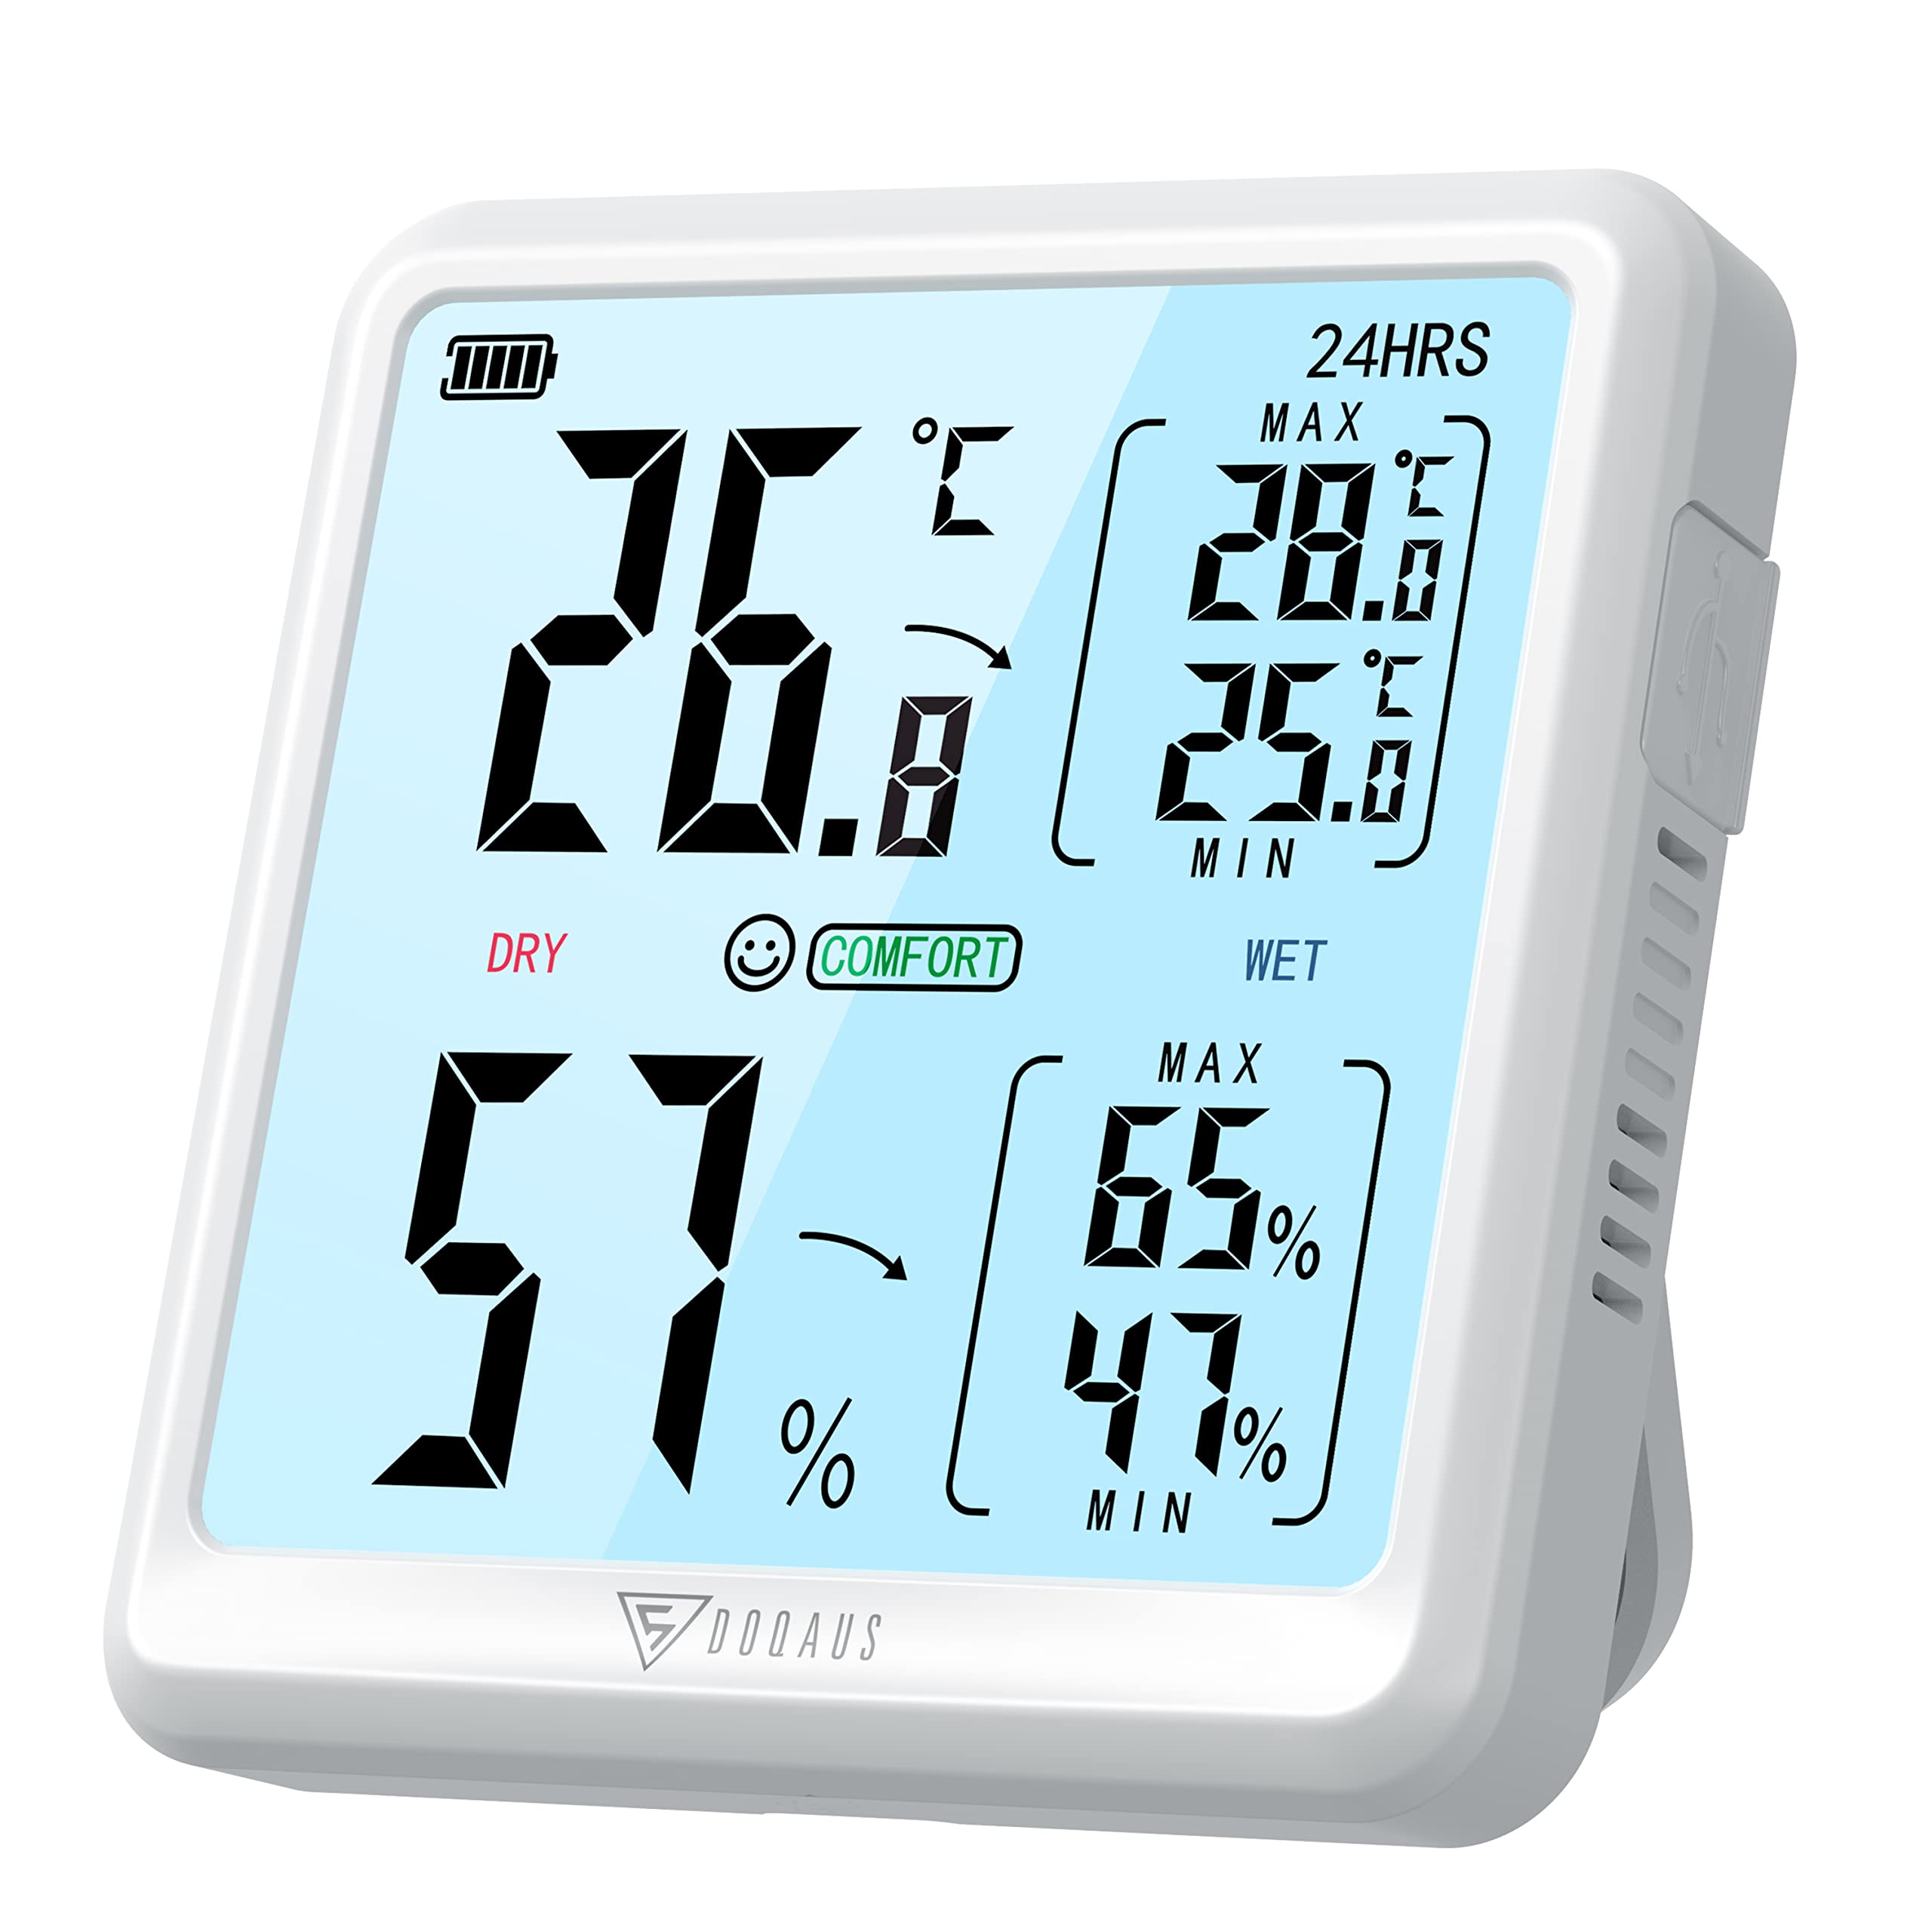 Exclusif DOQAUS Thermometre Interieur 3s Actualiser Hygromètre Interieur, avec rétroéclairage tactile, Max/Min enregistrement, humidimètre rechargeable, pour Moniteur température et humidité Greenhouse Office WHgTKDoKe grand